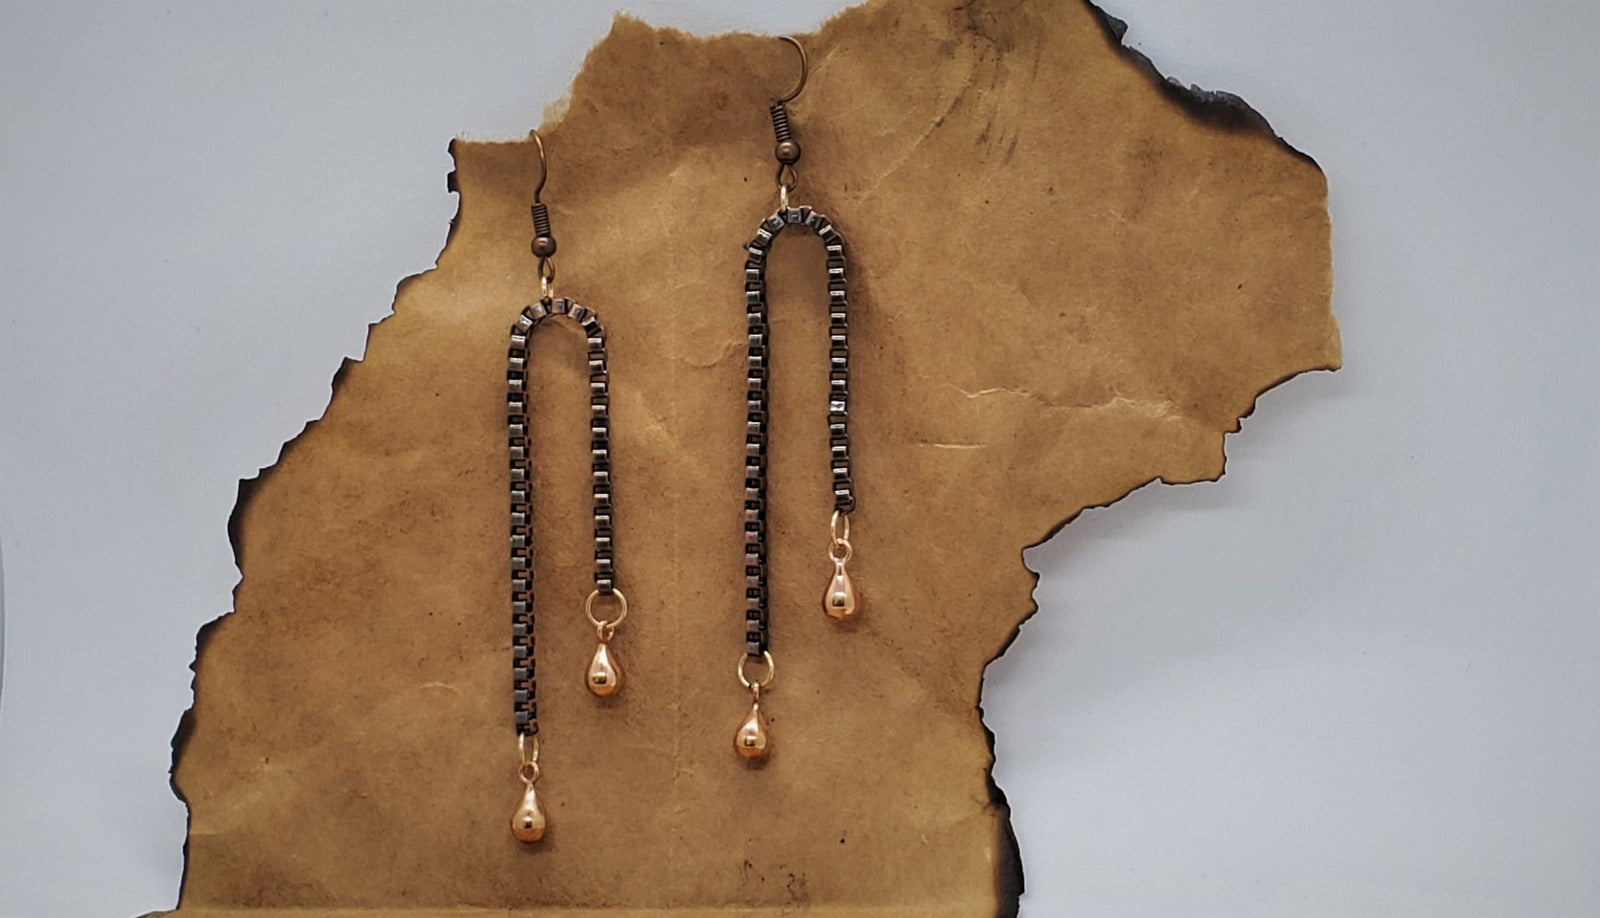 Earrings for women, Copper Chain Dangle Earrings, handmade earrings, photo of copper earrings on paper